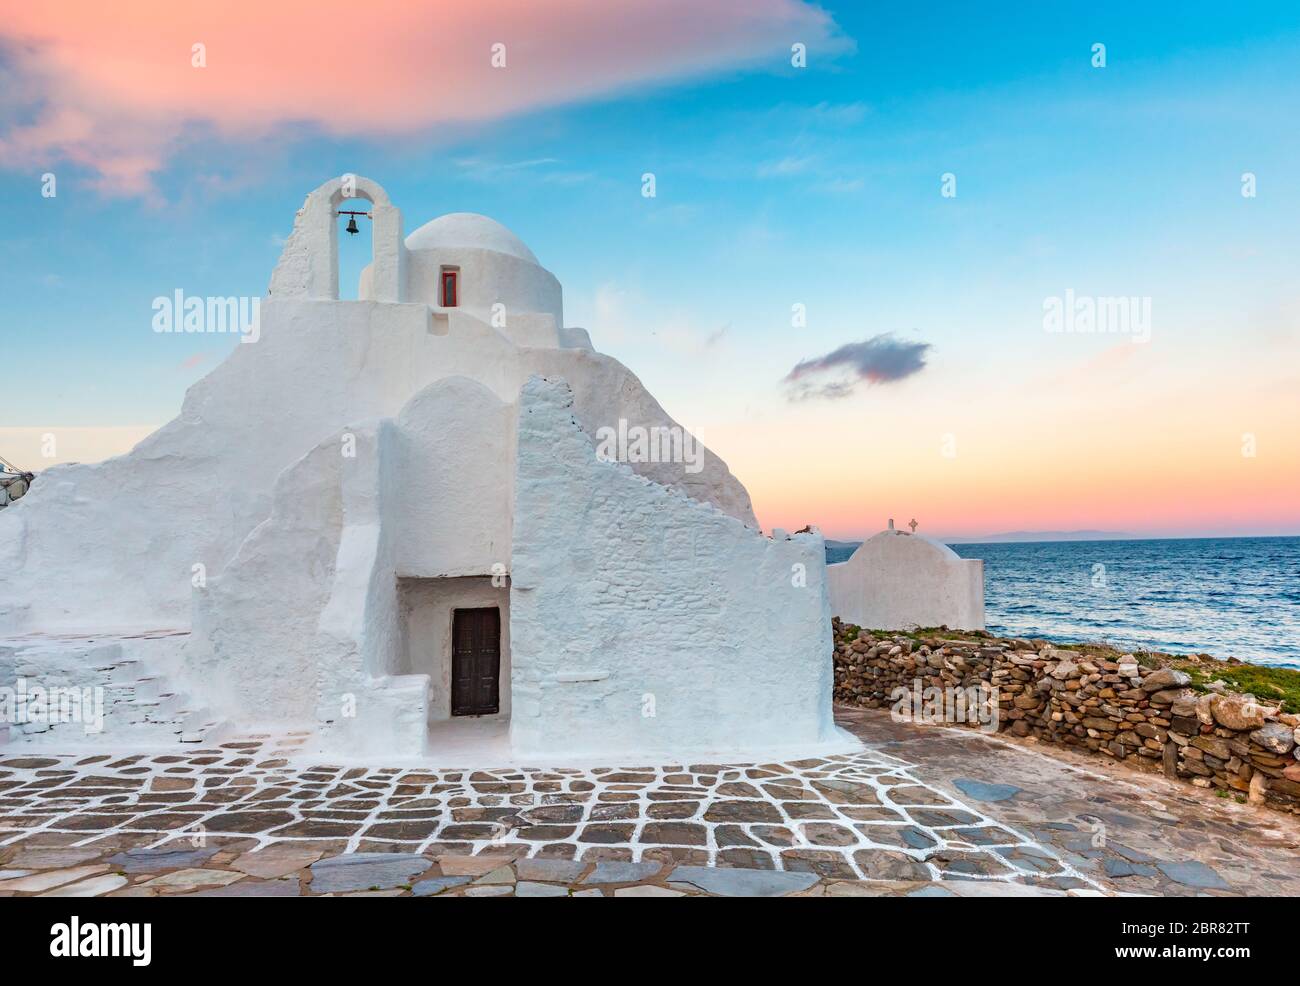 Kirche von Panagia Paraportiani bei Sonnenaufgang, die berühmtesten architektonischen Strukturen in Griechenland, auf der Insel Mykonos, der Insel der Winde, Griechenland Stockfoto